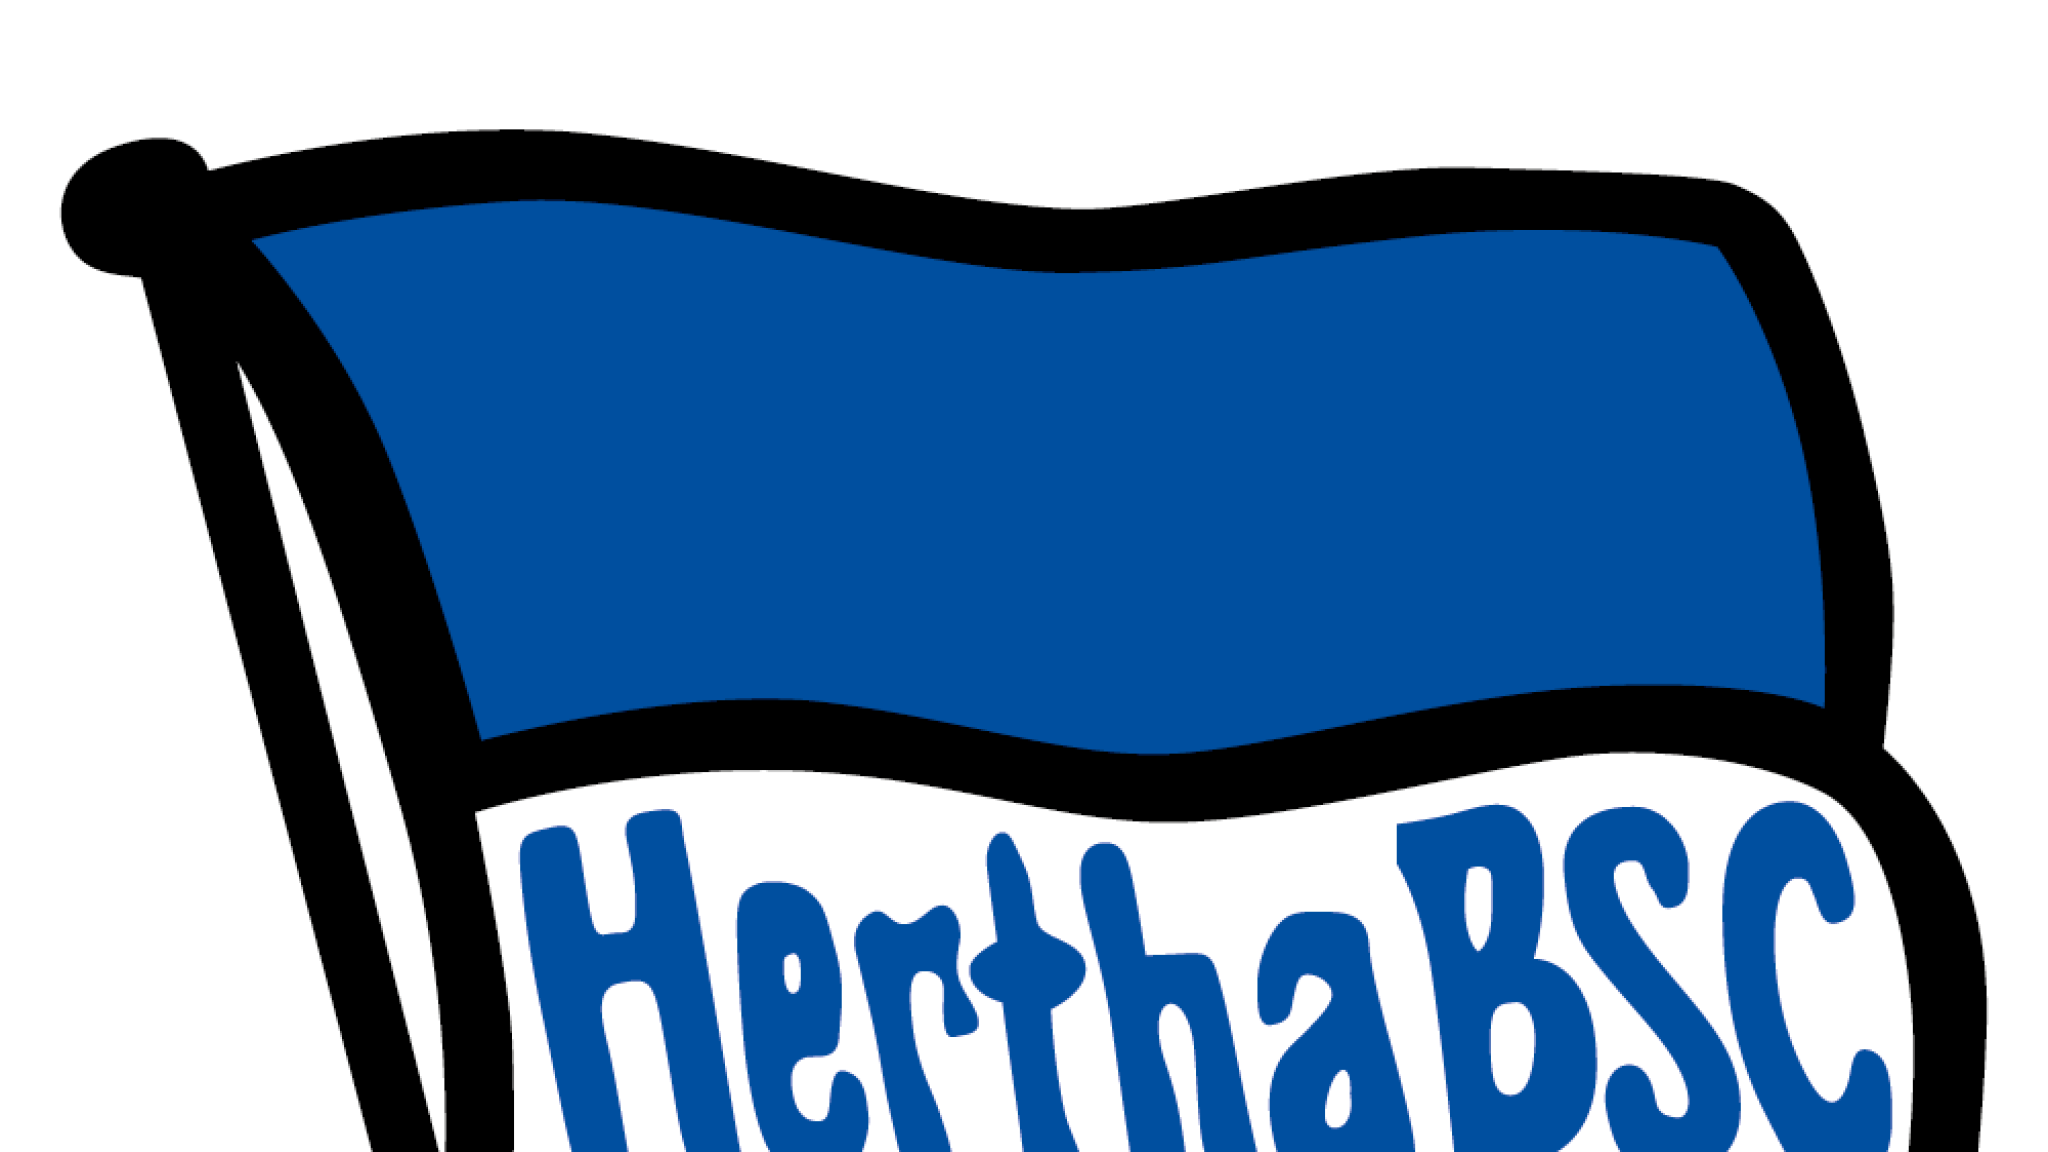 Hertha Berlin offering fans a lifetime season ticket on.